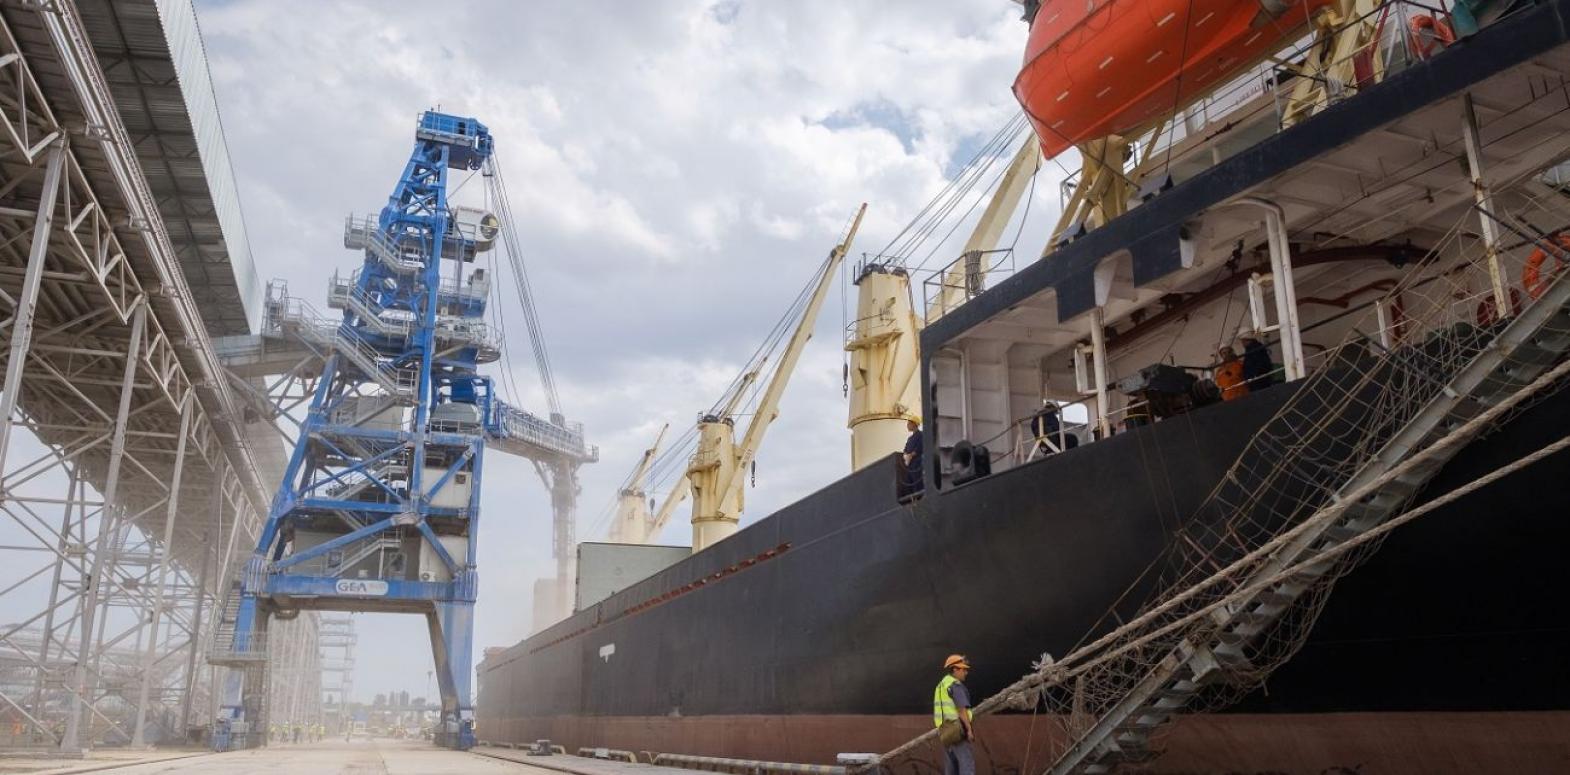 Восстановление работы портов Николаева удешевит логистику и увеличит украинский экспорт, – эксперты